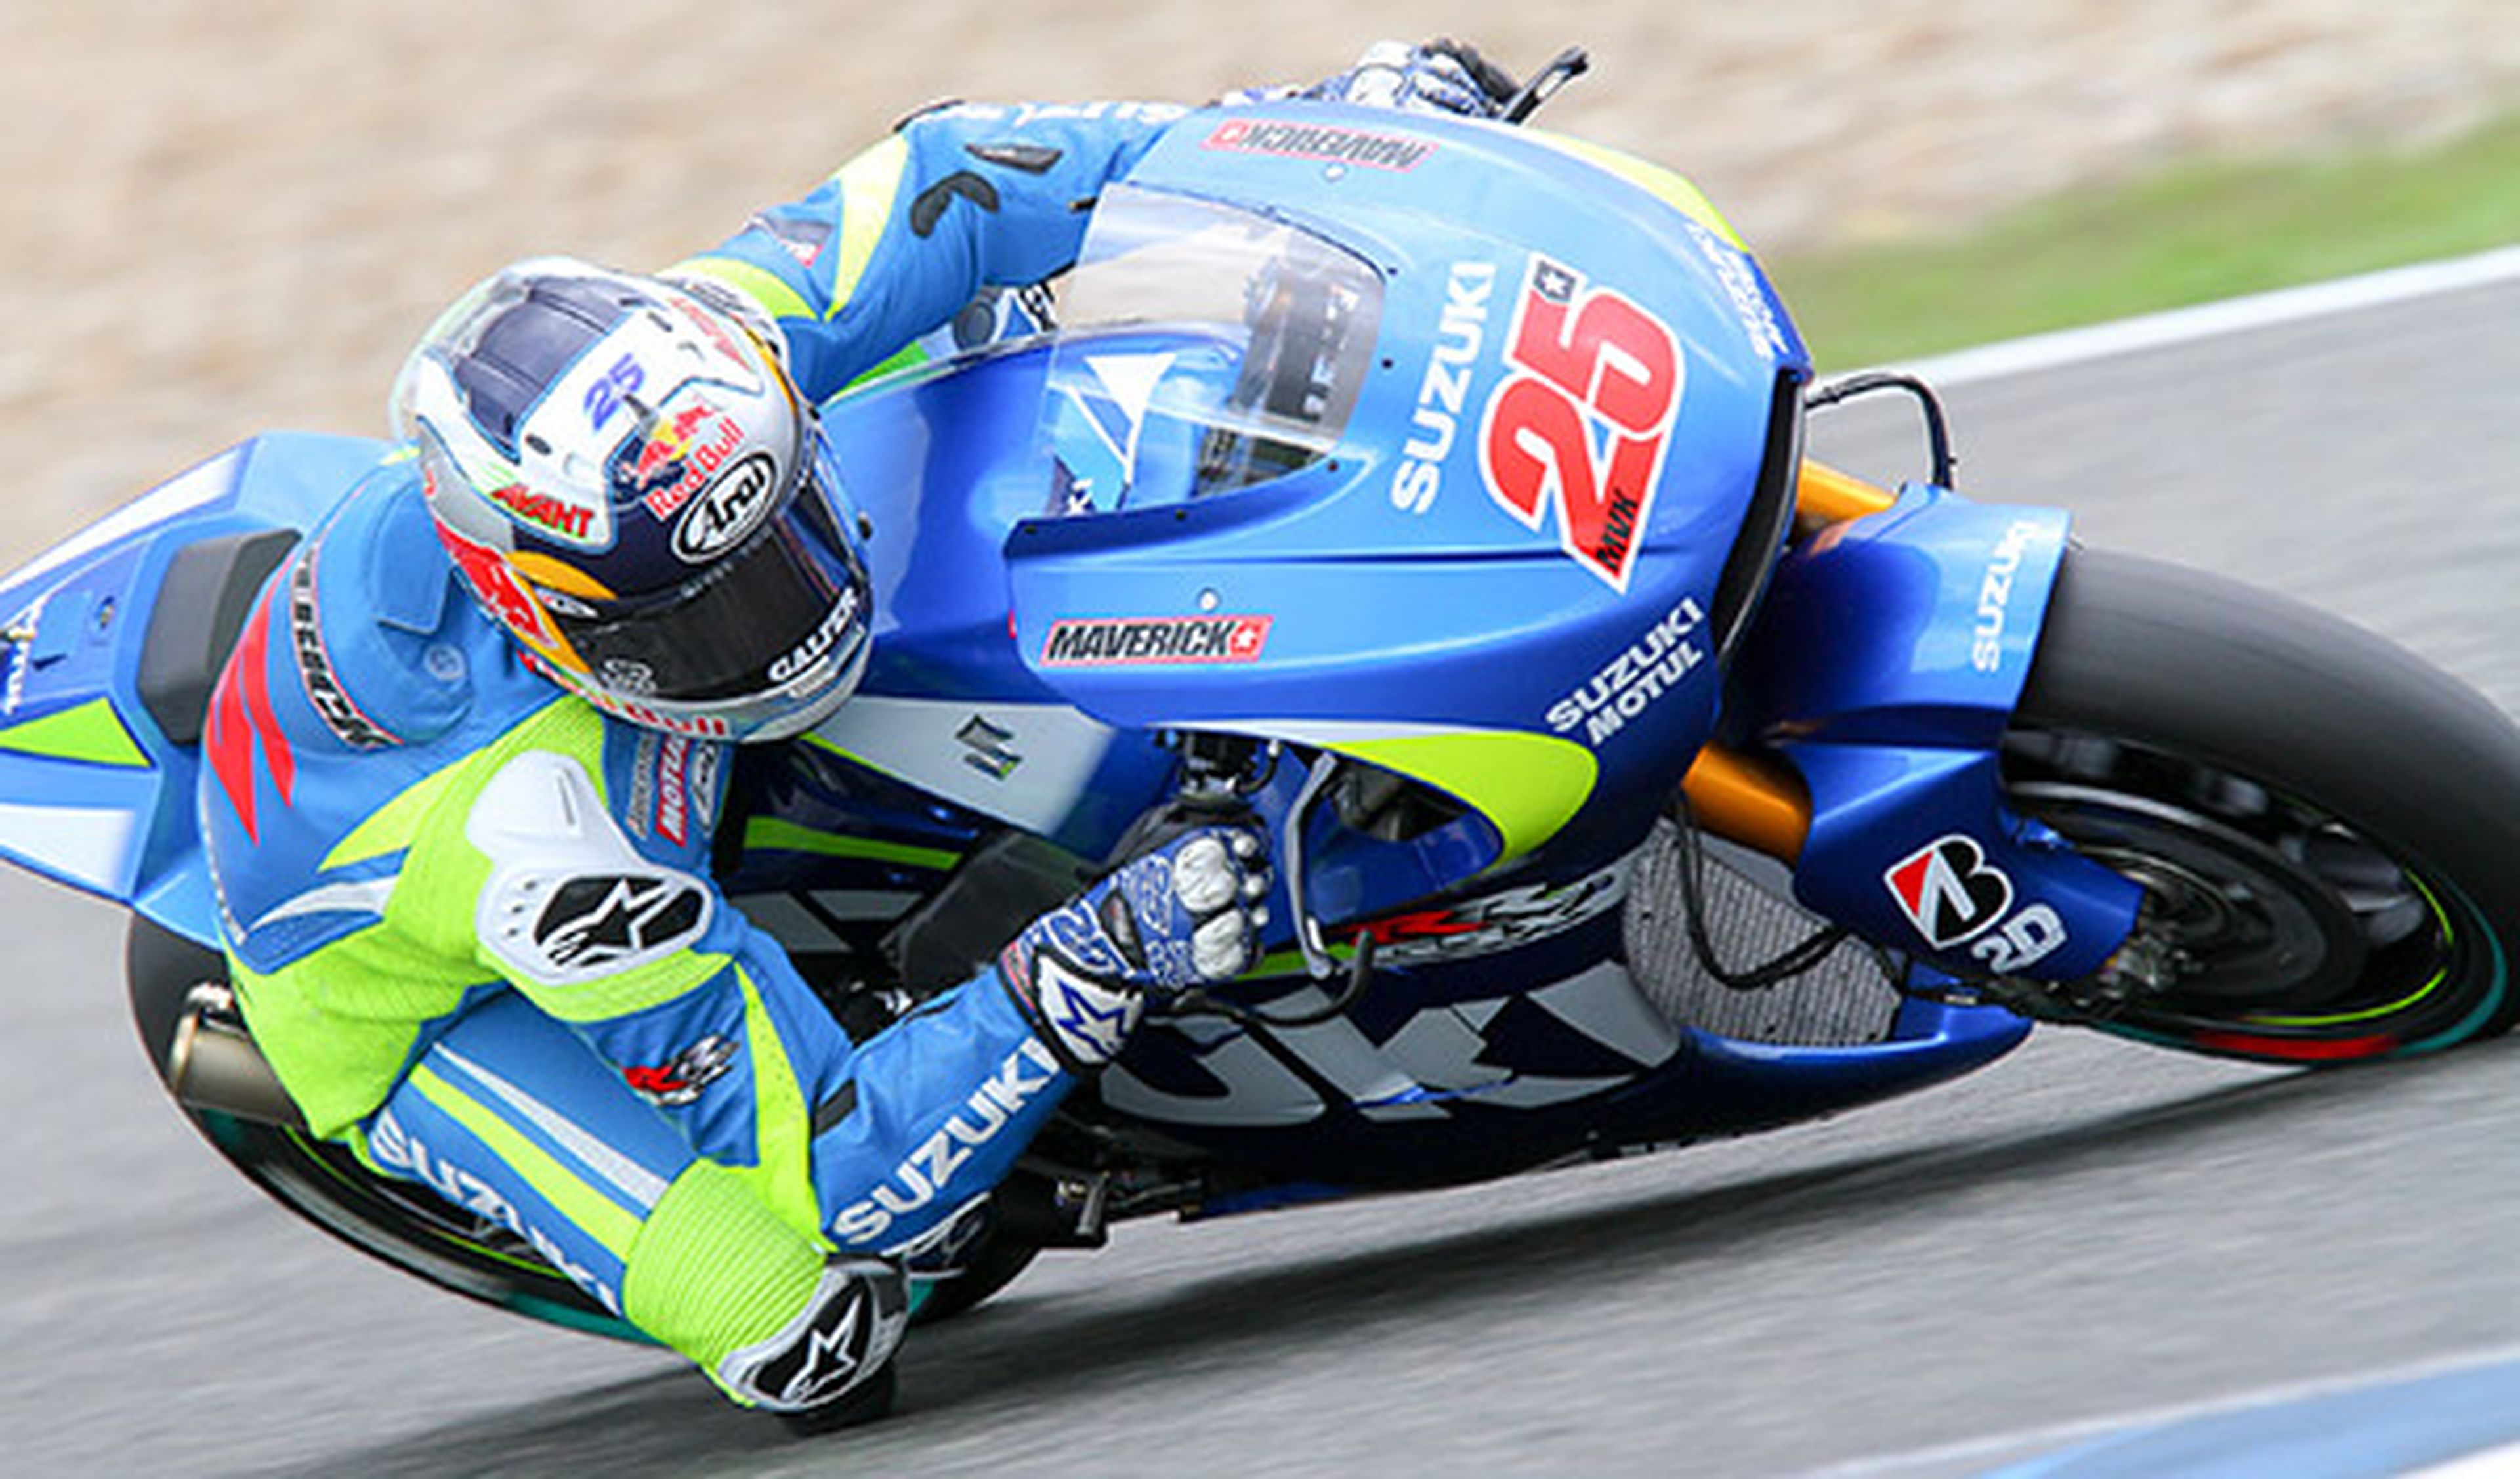 Maverick Viñales Suzuki MotoGP